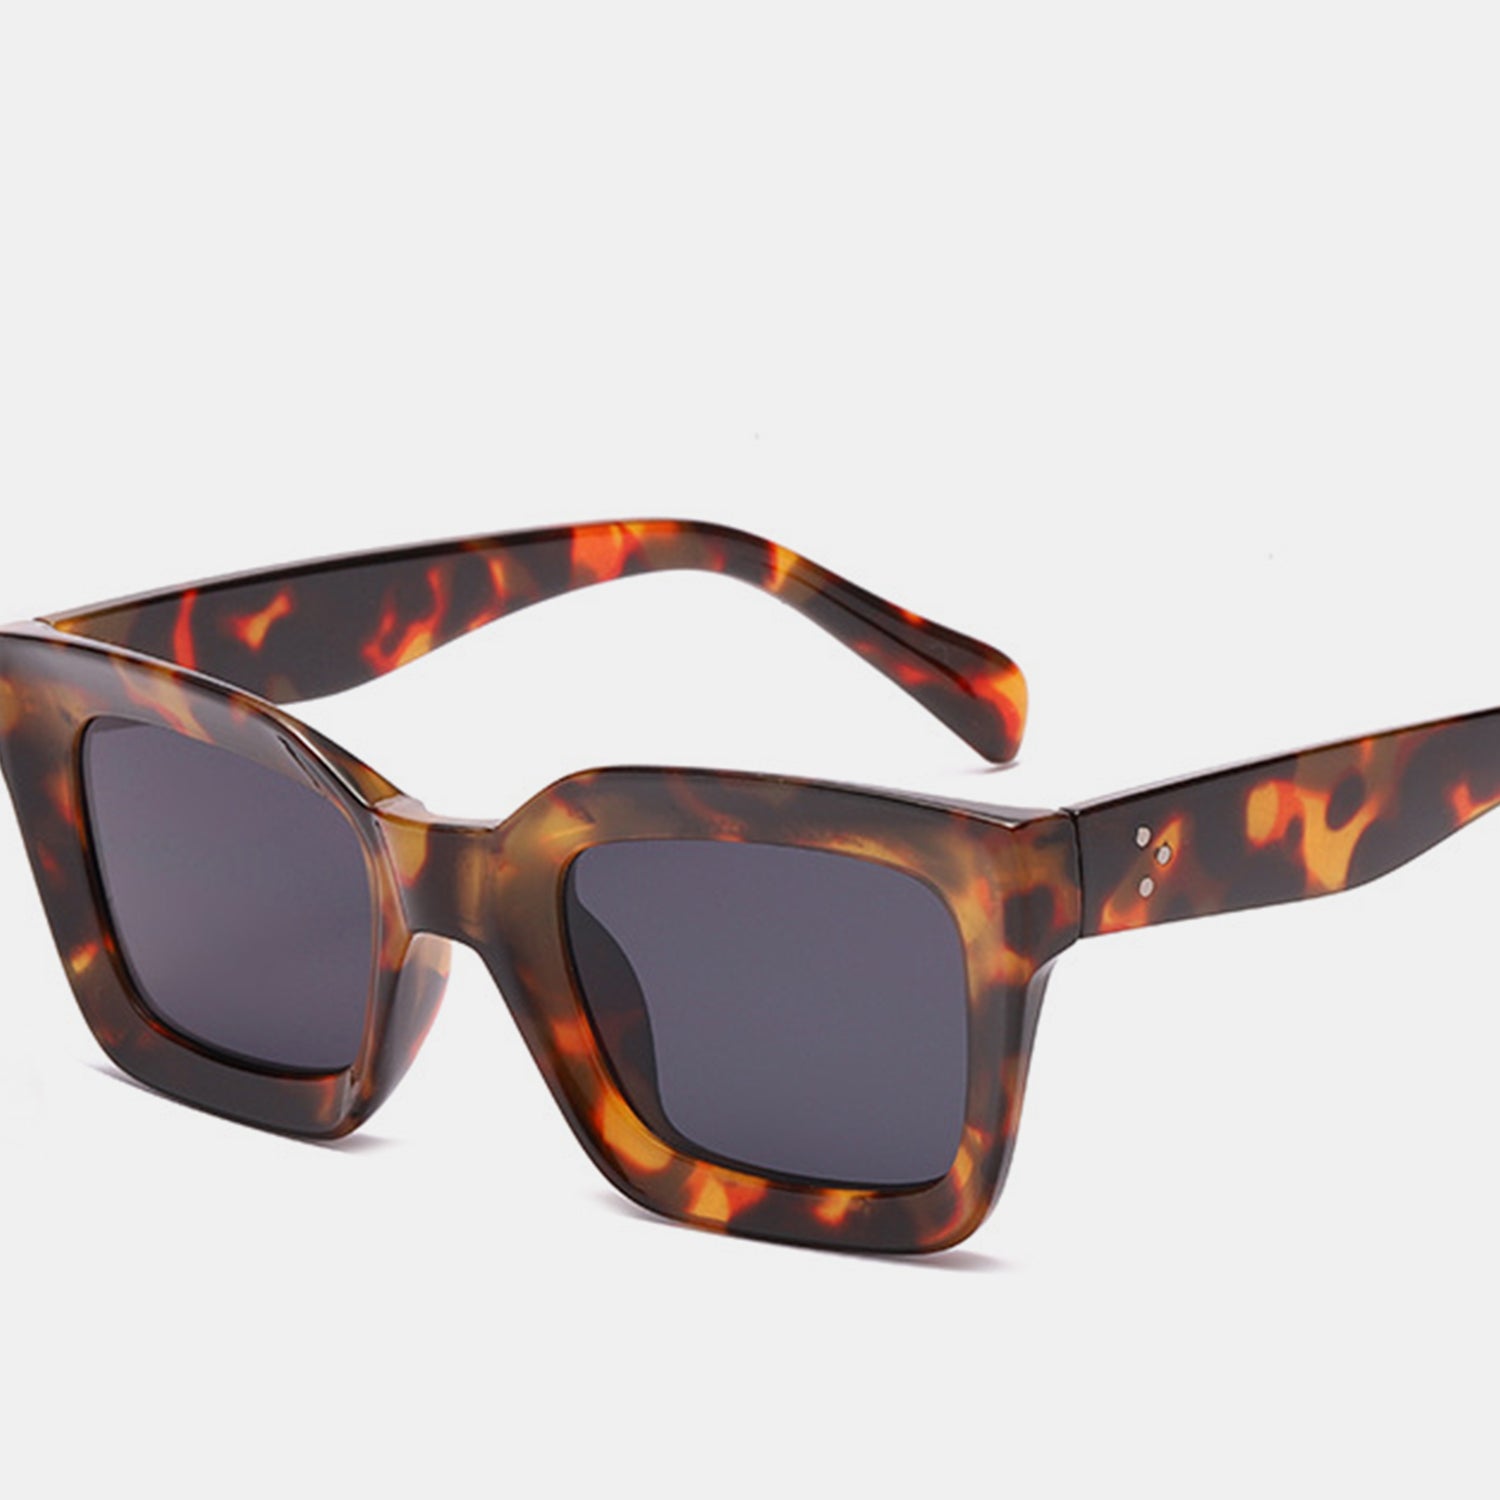 TEEK - Brown Polycarbonate Square Sunglasses EYEGLASSES TEEK Trend   